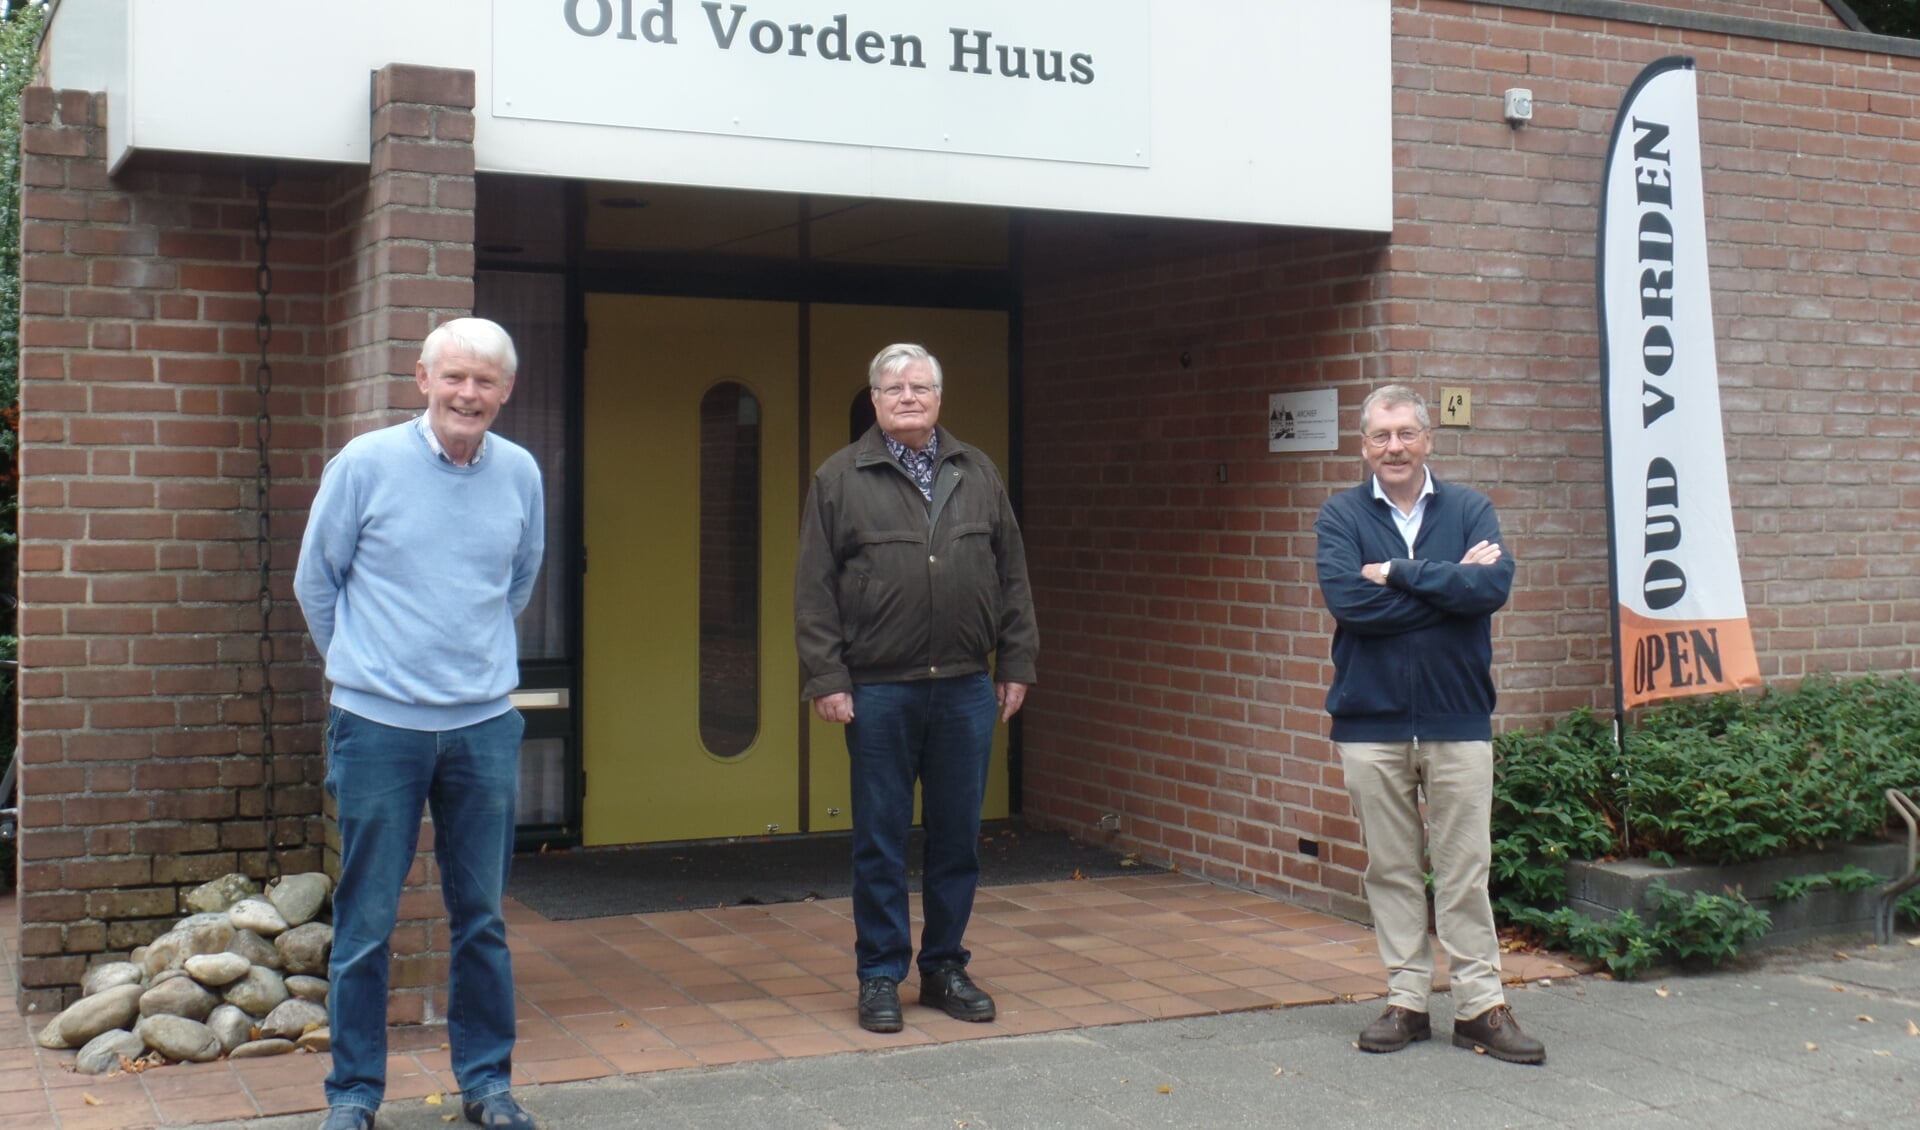 Links de twee oud-voorzitters van Oud Vorden Wim Ruiterkamp en Henk Vaags en rechts de nieuwe voorzitter van de oudheidkundige vereniging Frank van Setten voor de ingang van het Oud Vorden Huus. Foto: Jan Hendriksen